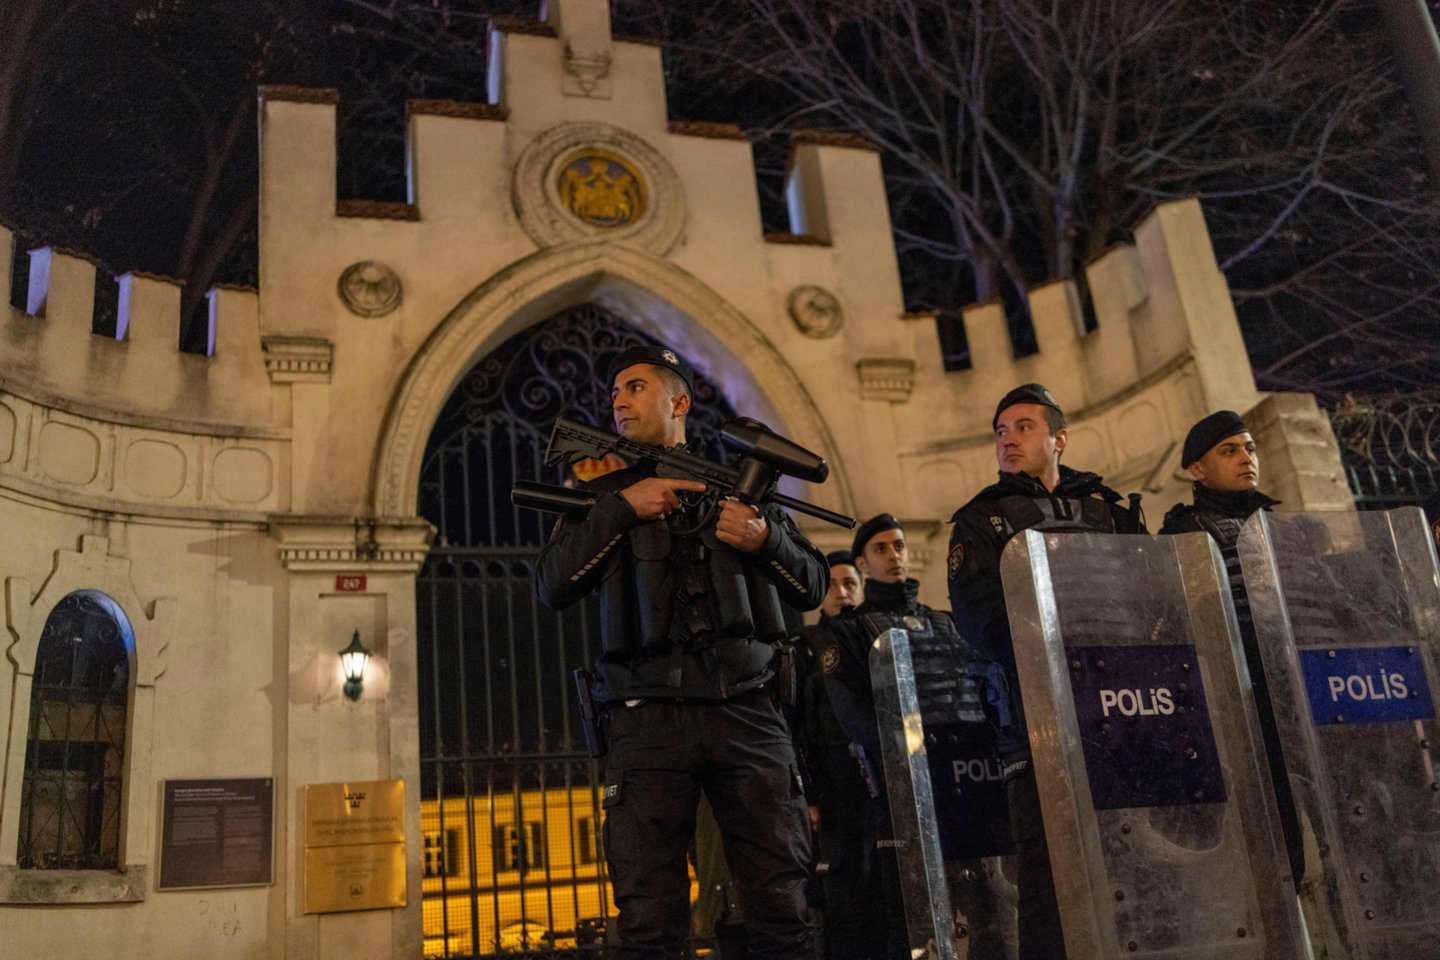 Riaušių policijos pareigūnai saugo Švedijos generalinio konsulato įėjimą per demonstraciją.<br>Reuters/Scanpix asociatyvi nuotr.